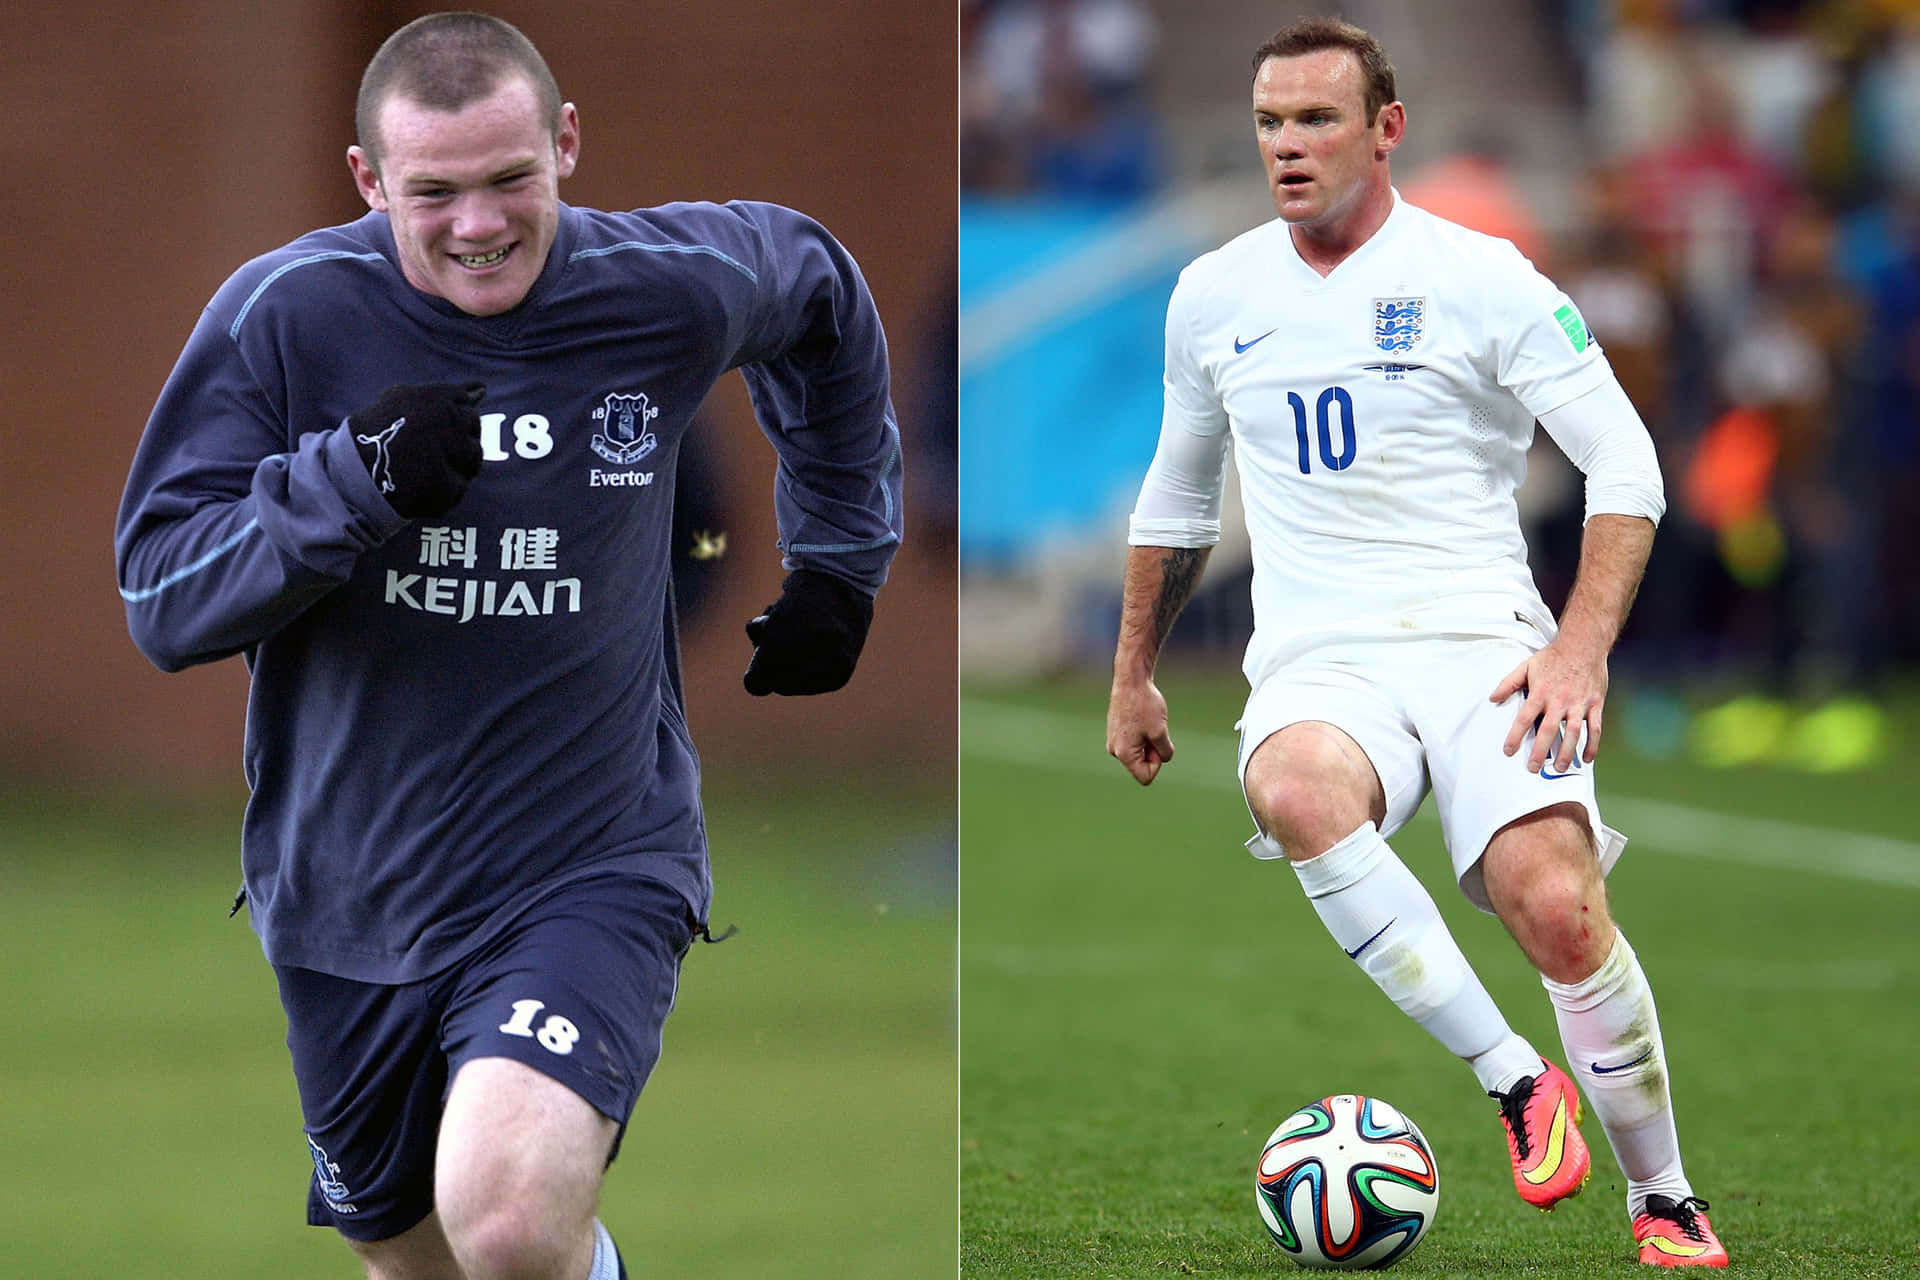 Fotbollsspelarenwayne Rooney Och Bild.